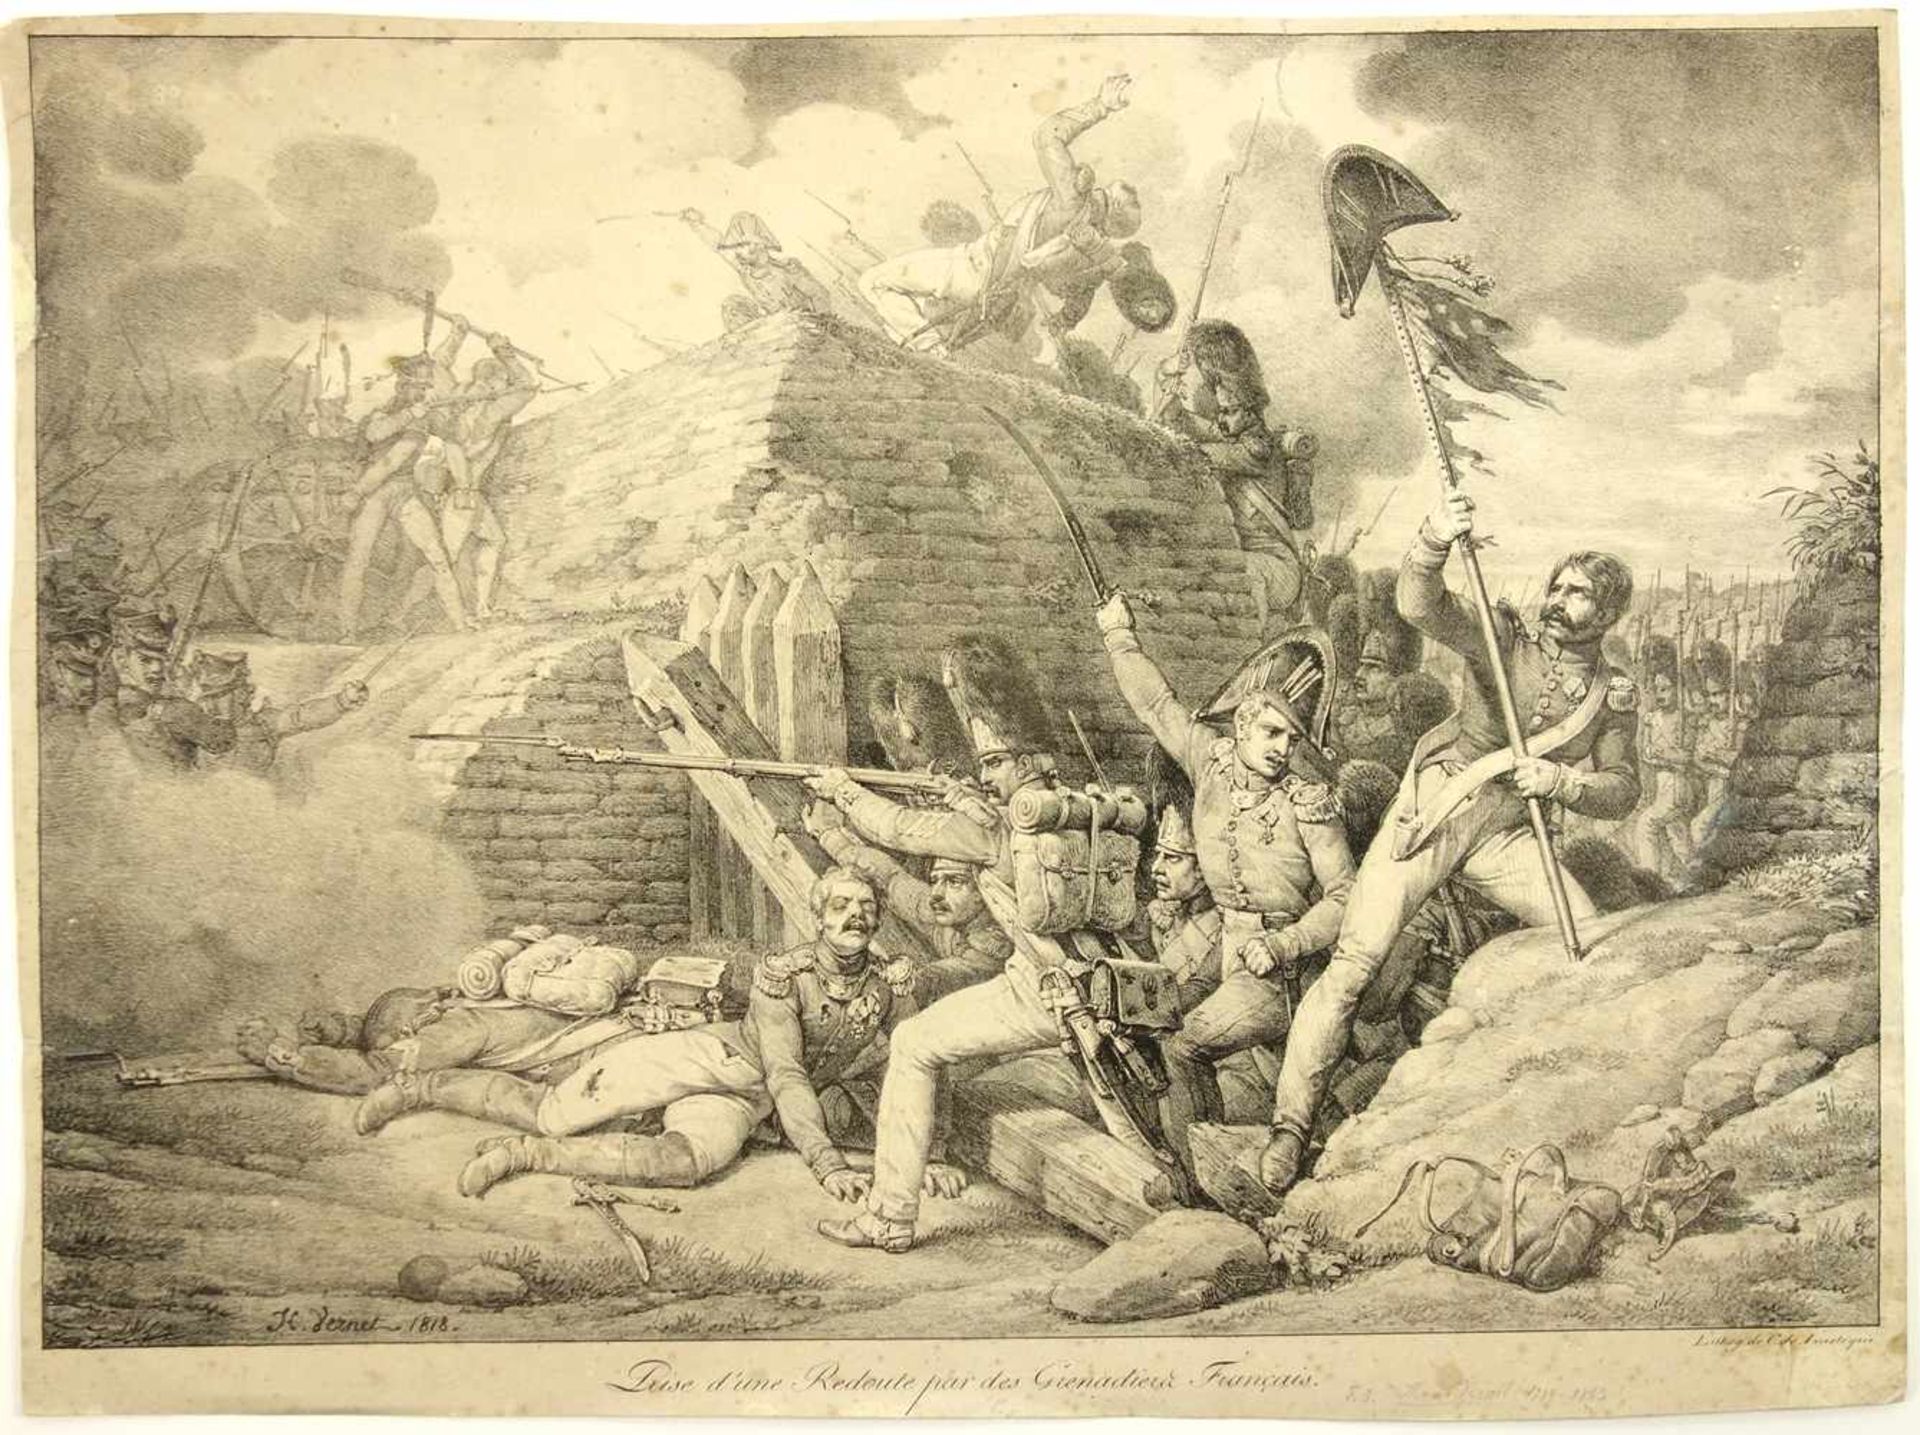 Charles de Lasteyrie (1759-1849), "Prise d'une redoute par des Grenadiers Français (Belagerung der